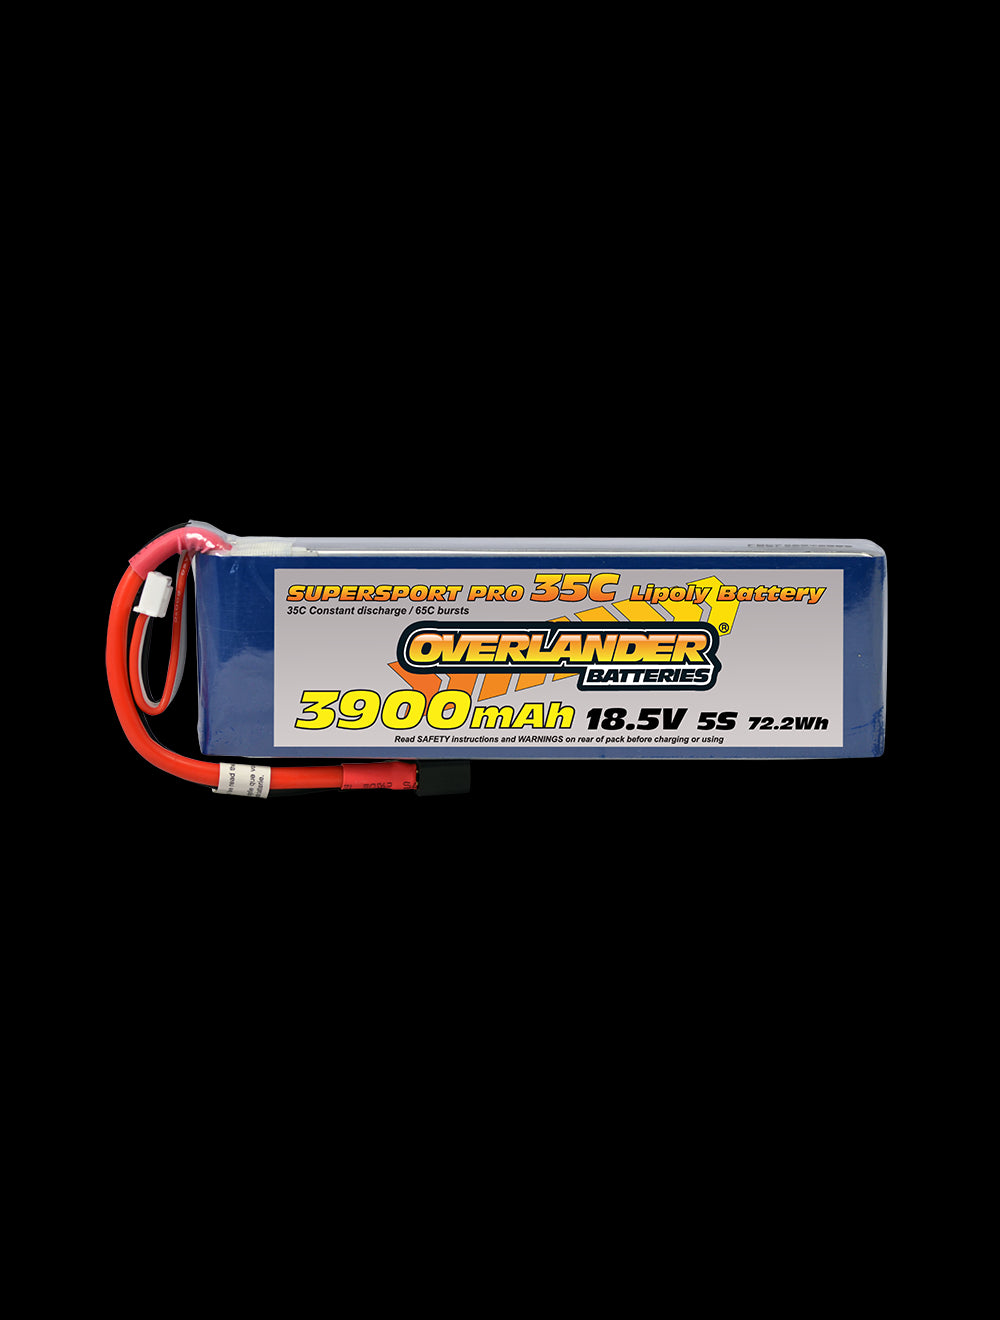 Overlander 3900mAh 18.5V 5S 35C Supersport Pro LiPo Battery - EC5 Connector 3191